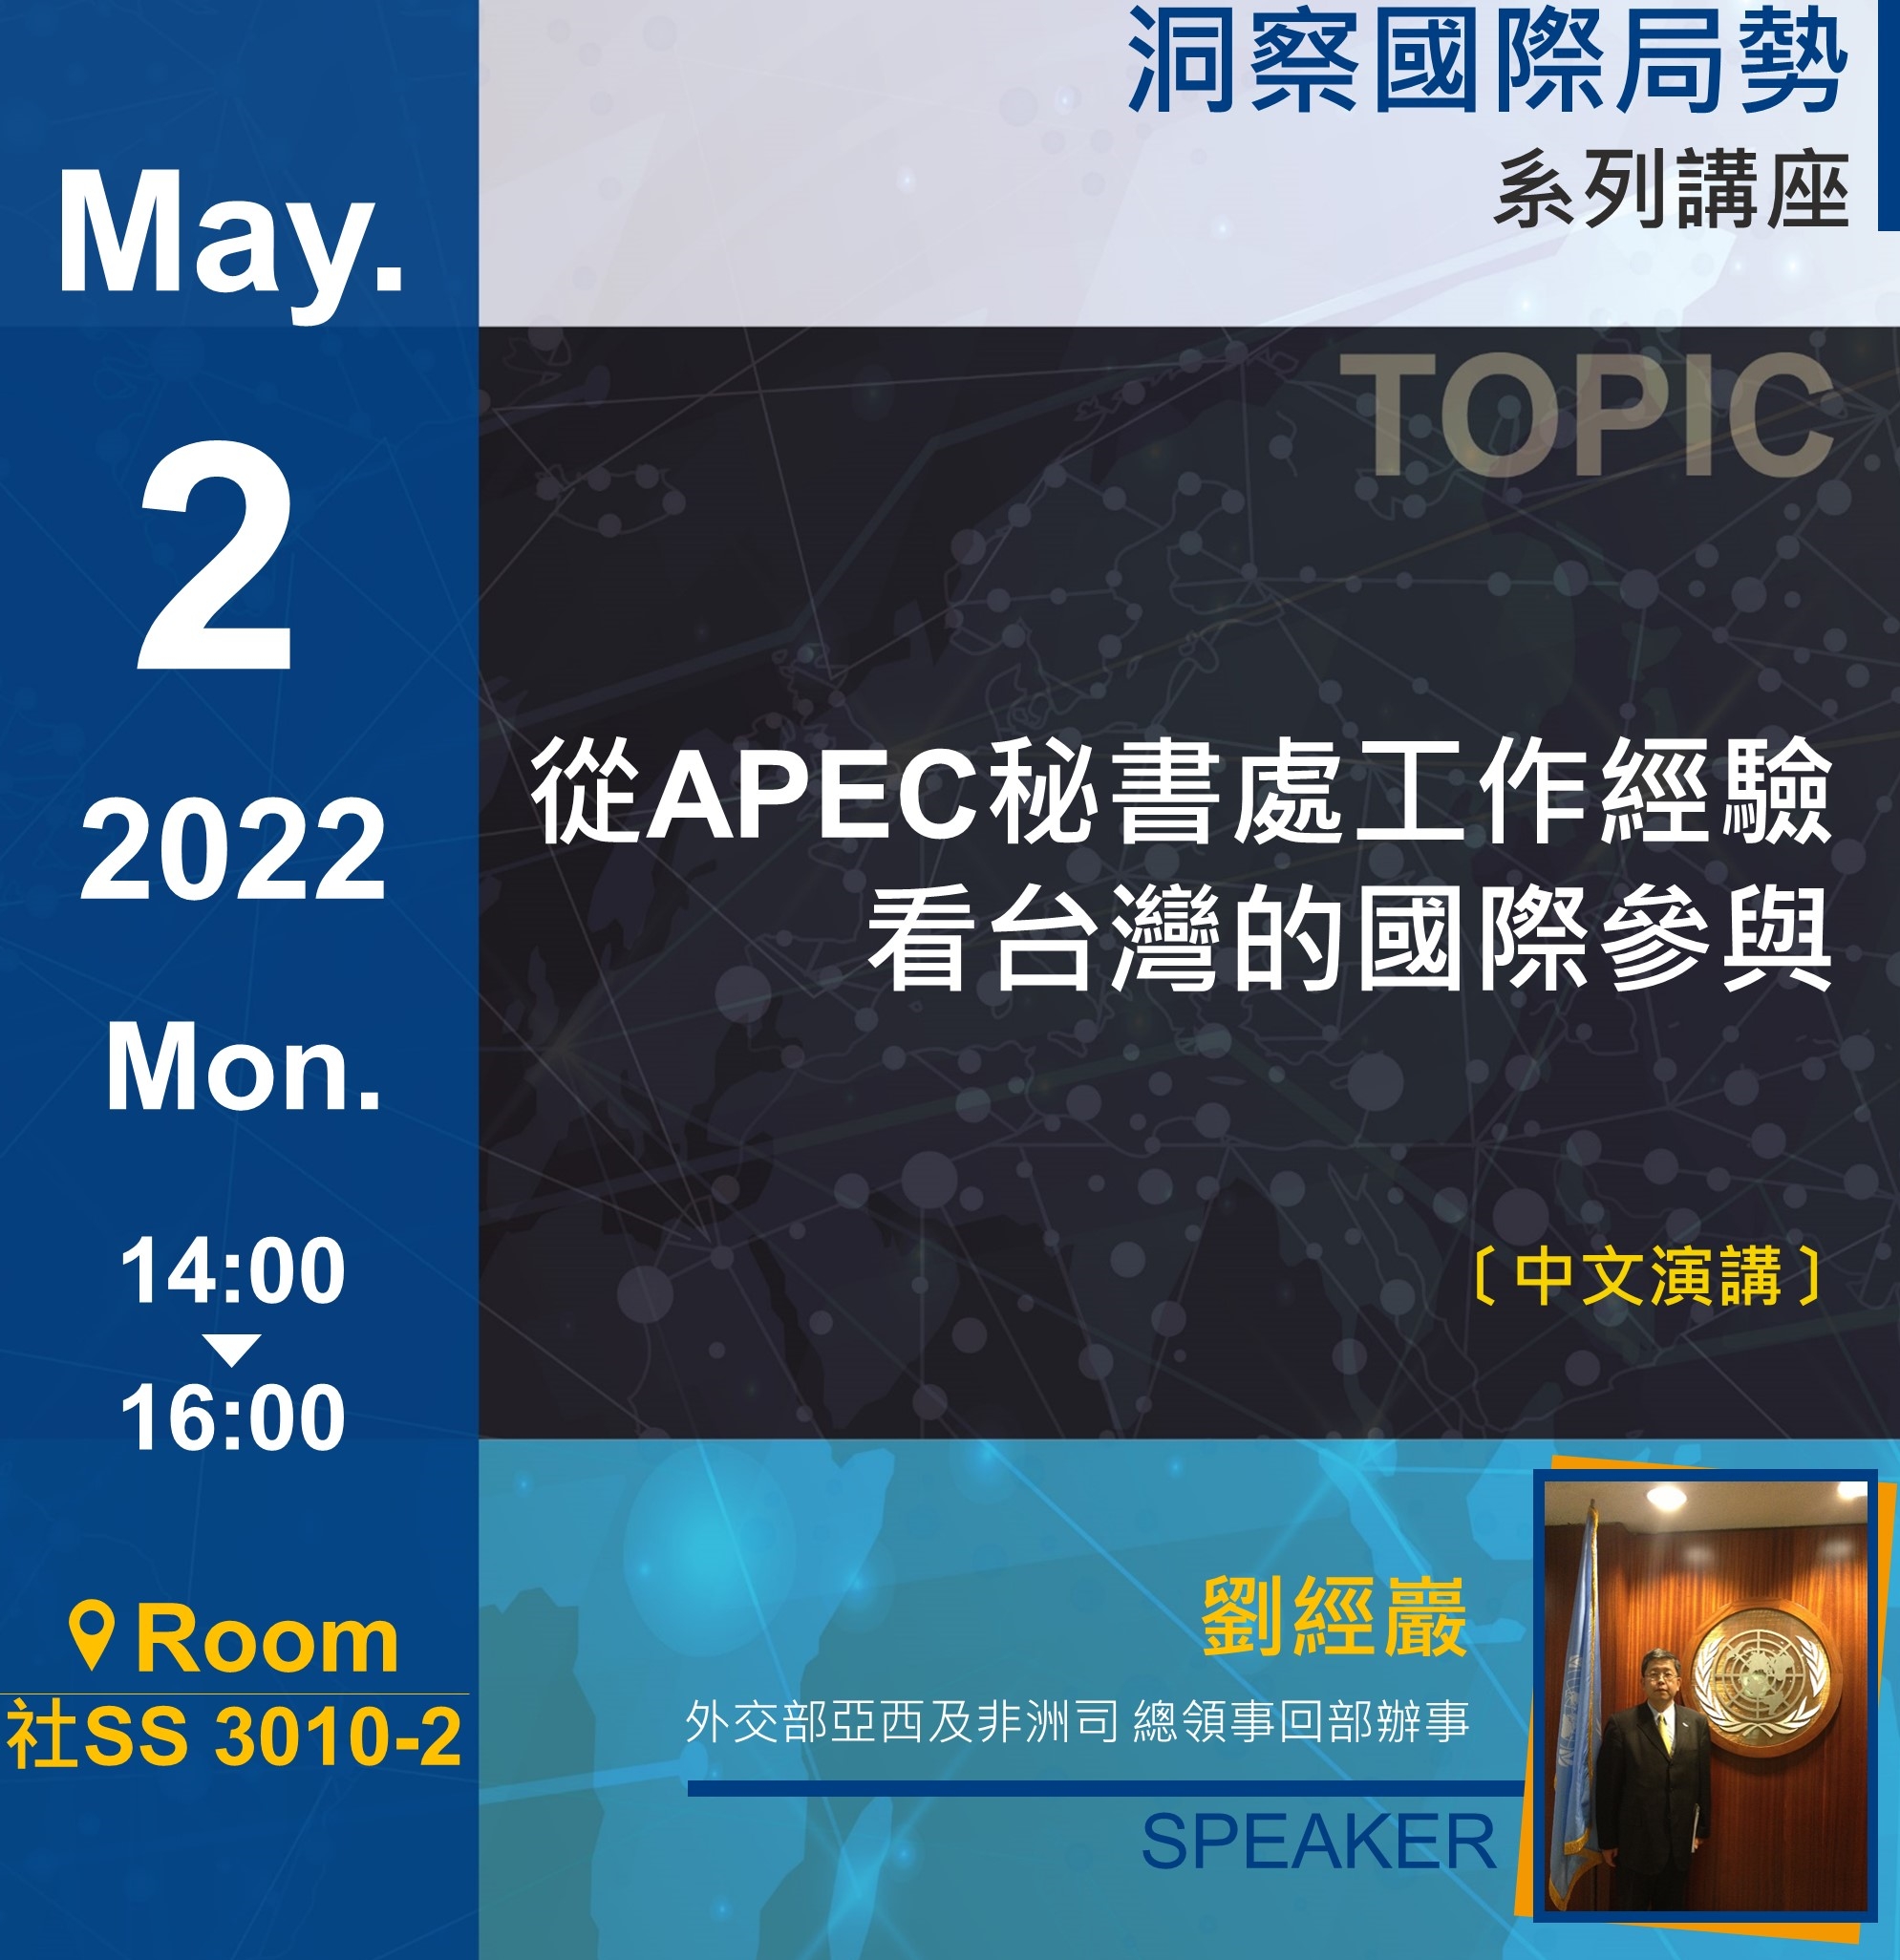 劉經巖： 從APEC秘書處工作經驗看台灣的國際參與